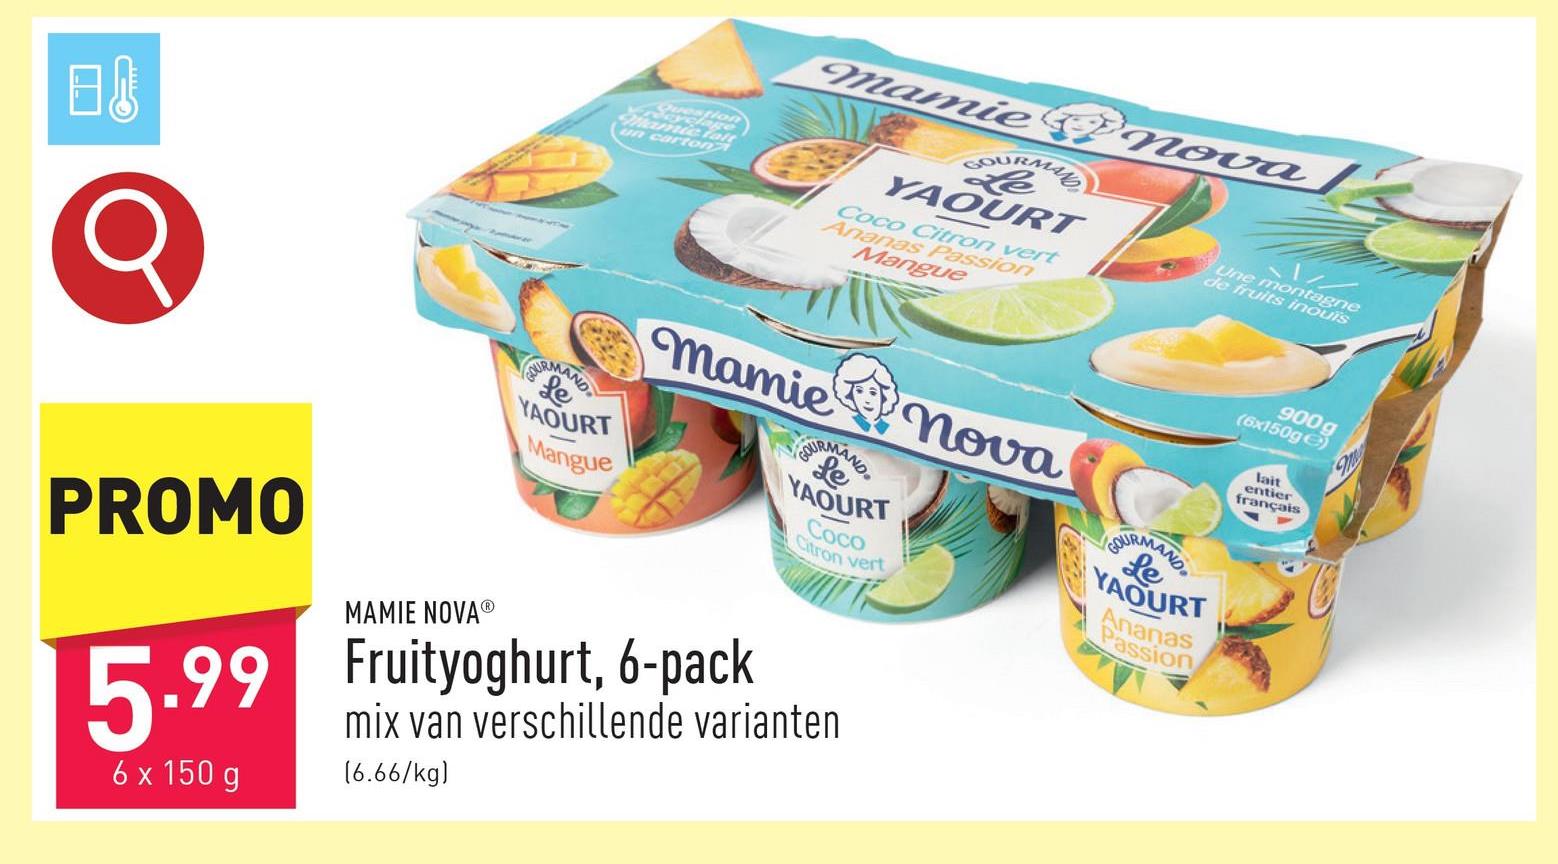 Fruityoghurt, 6-pack mix van verschillende varianten